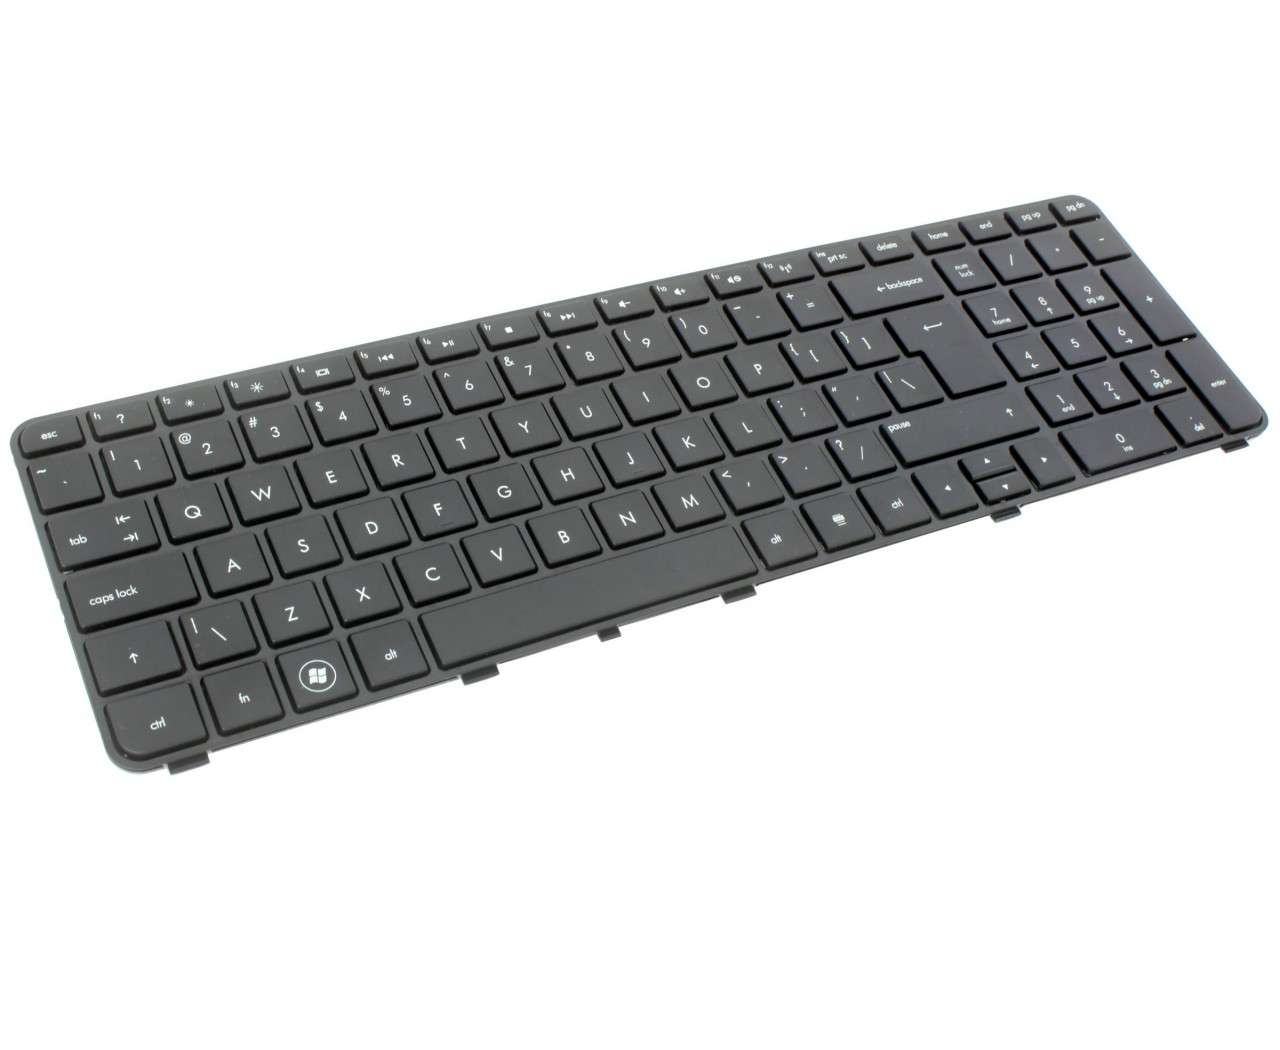 Tastatura HP 608558 031